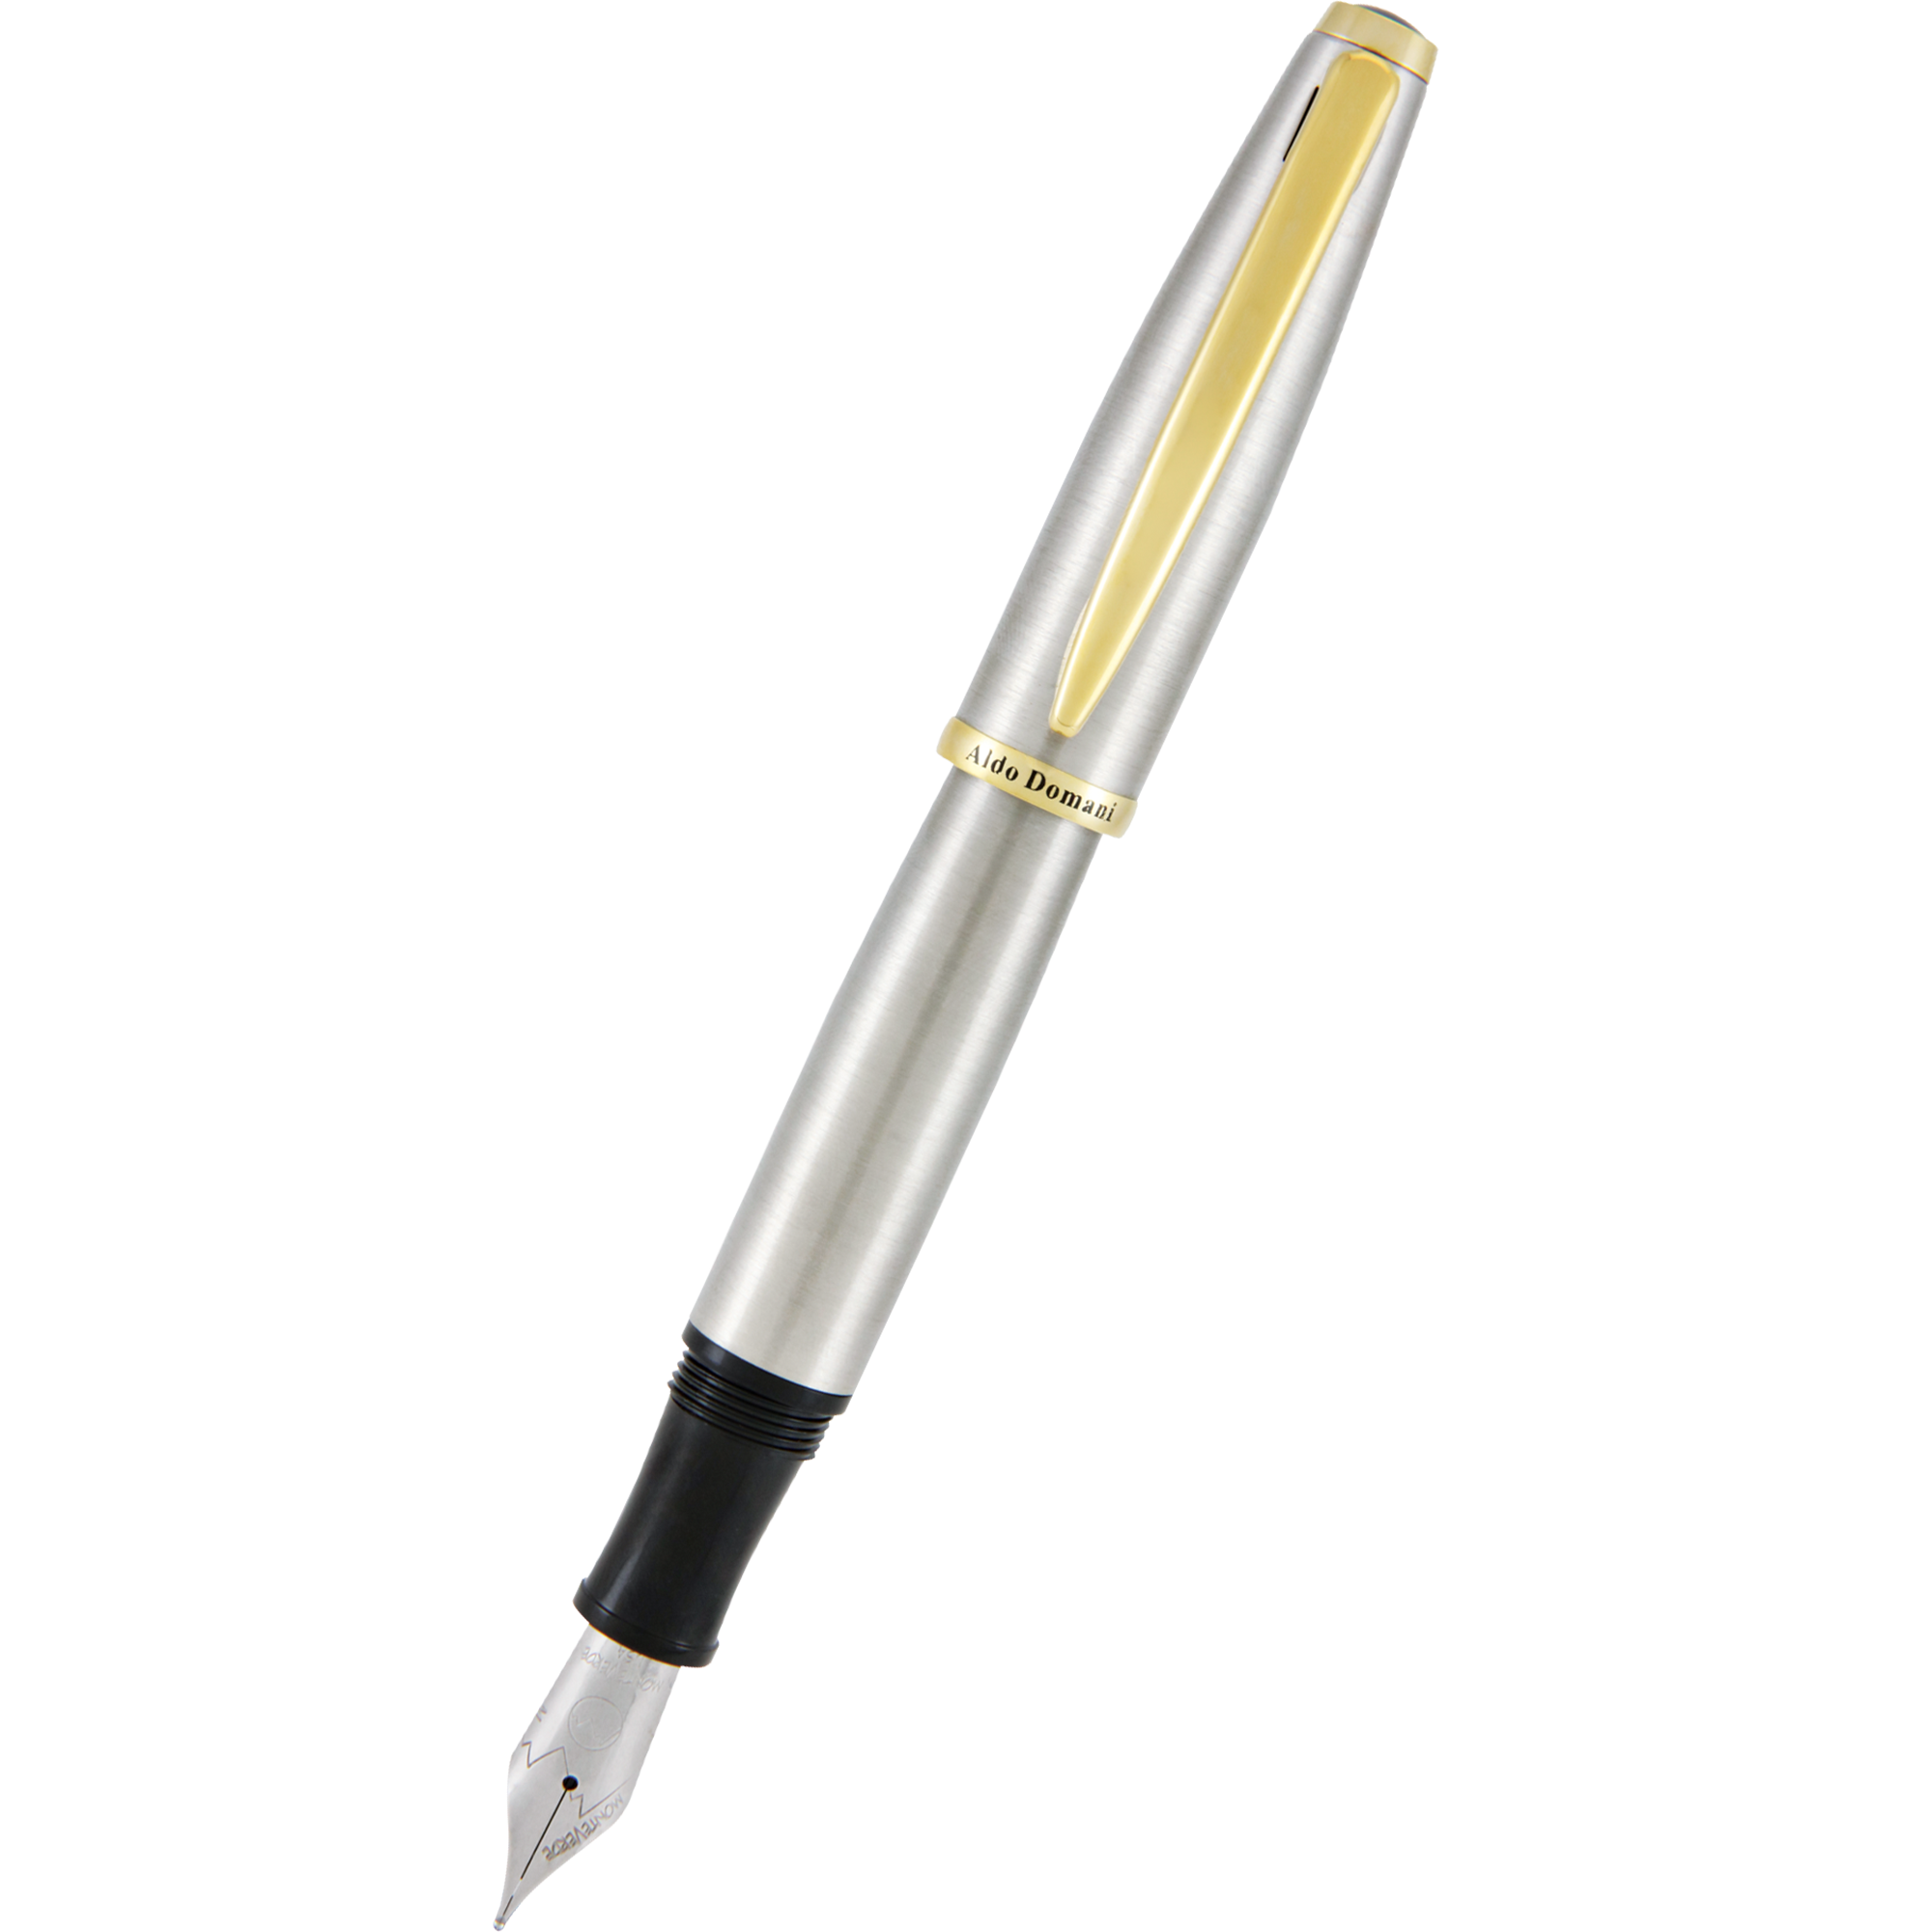 Monteverde Aldo Domani Fountain Pen - Brushed-Pen Boutique Ltd